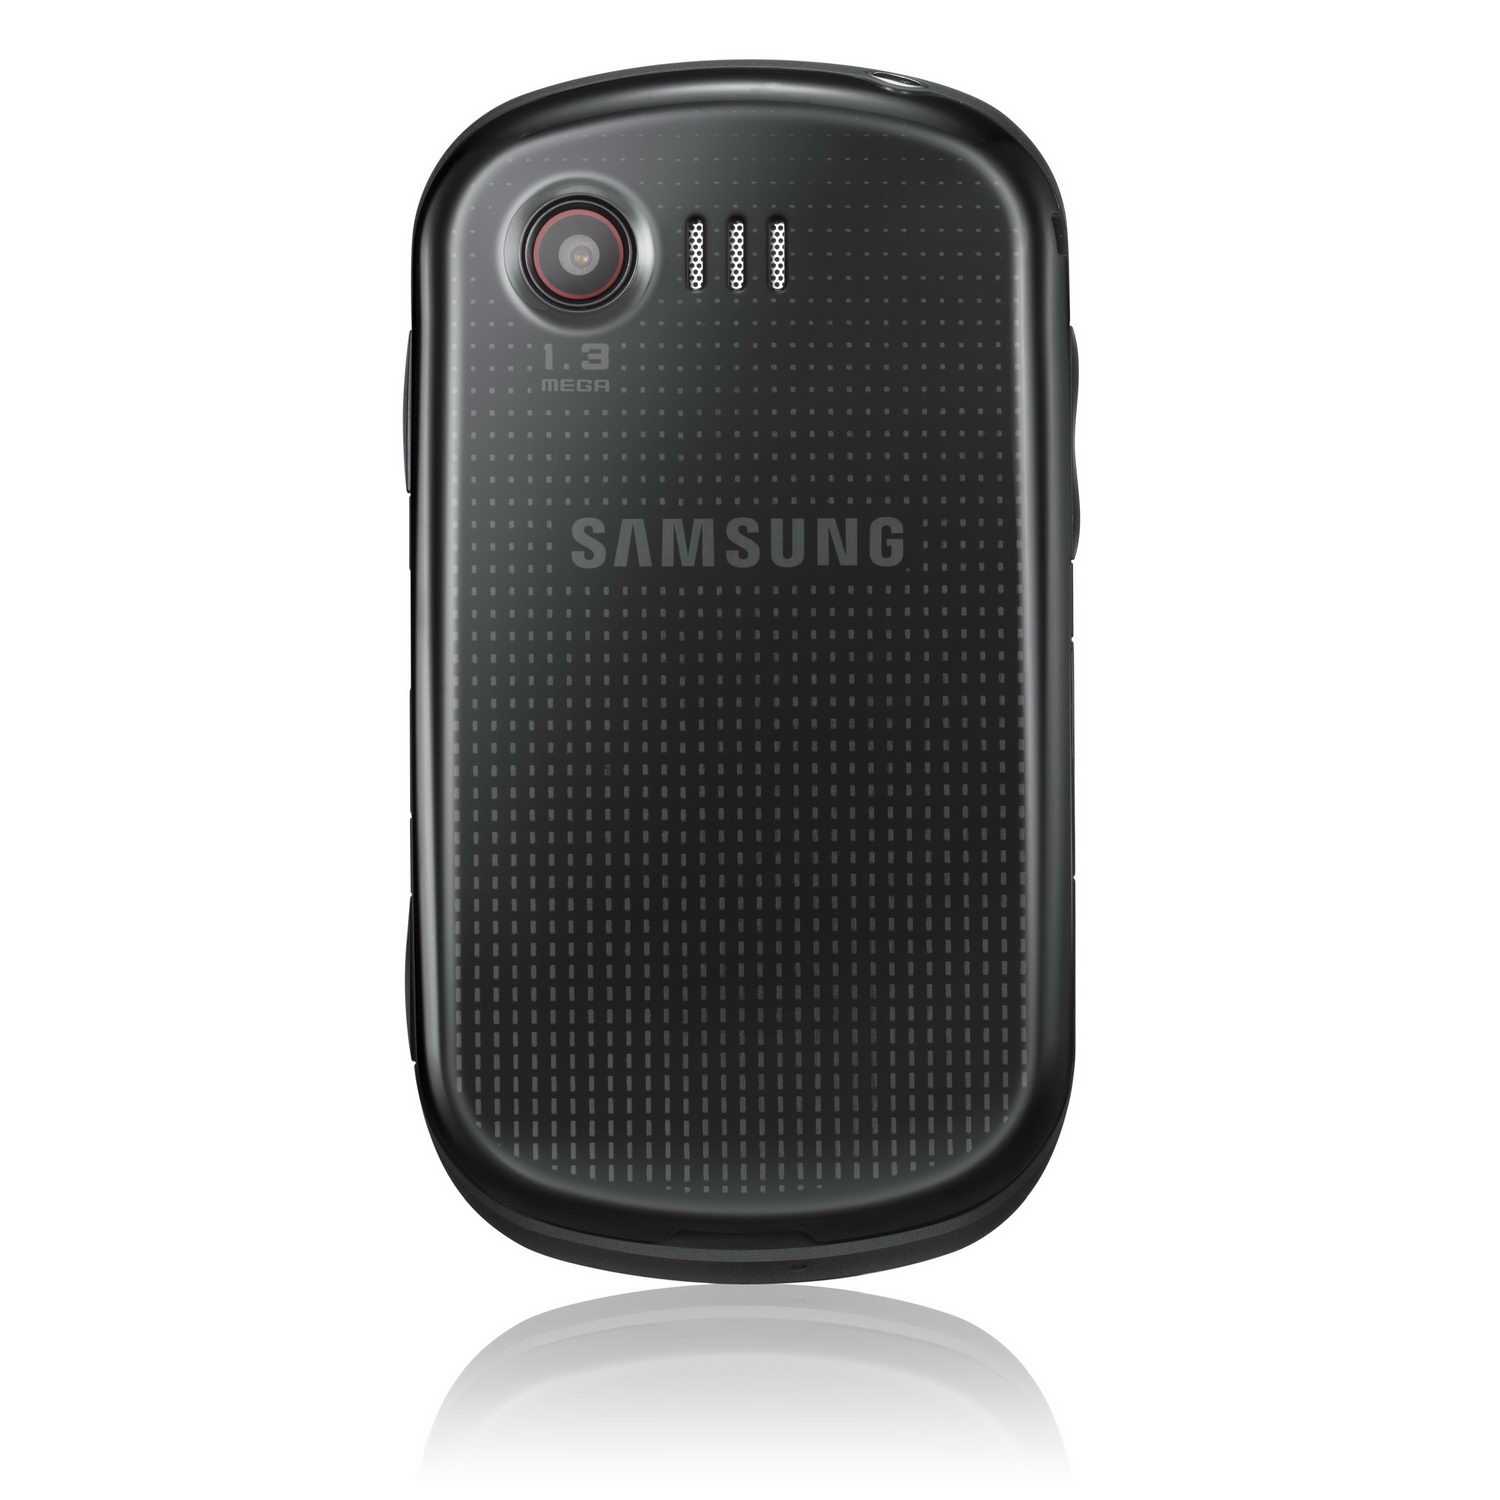 Телефон samsung genoa tv gt-c3510t 50 мб — купить, цена и характеристики, отзывы